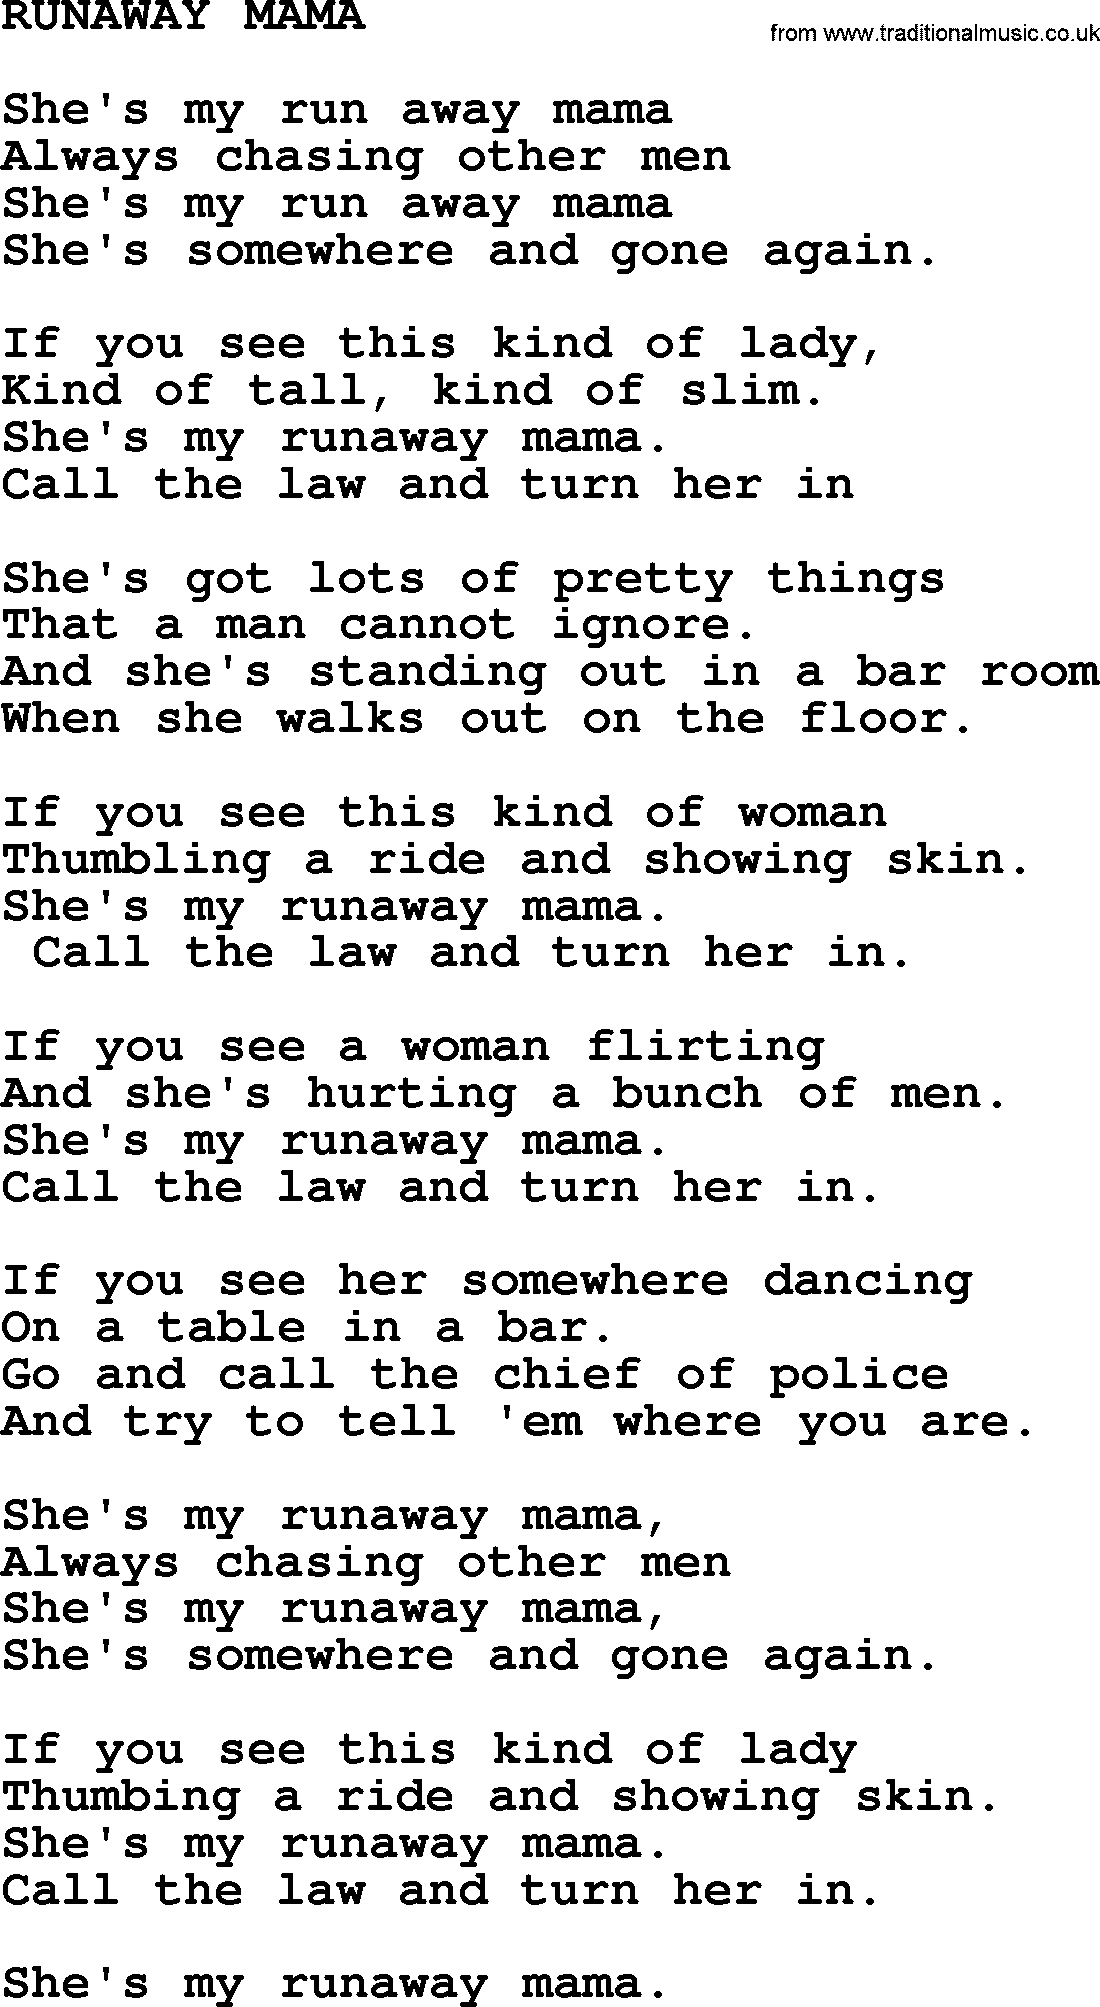 Merle Haggard song: Runaway Mama, lyrics.